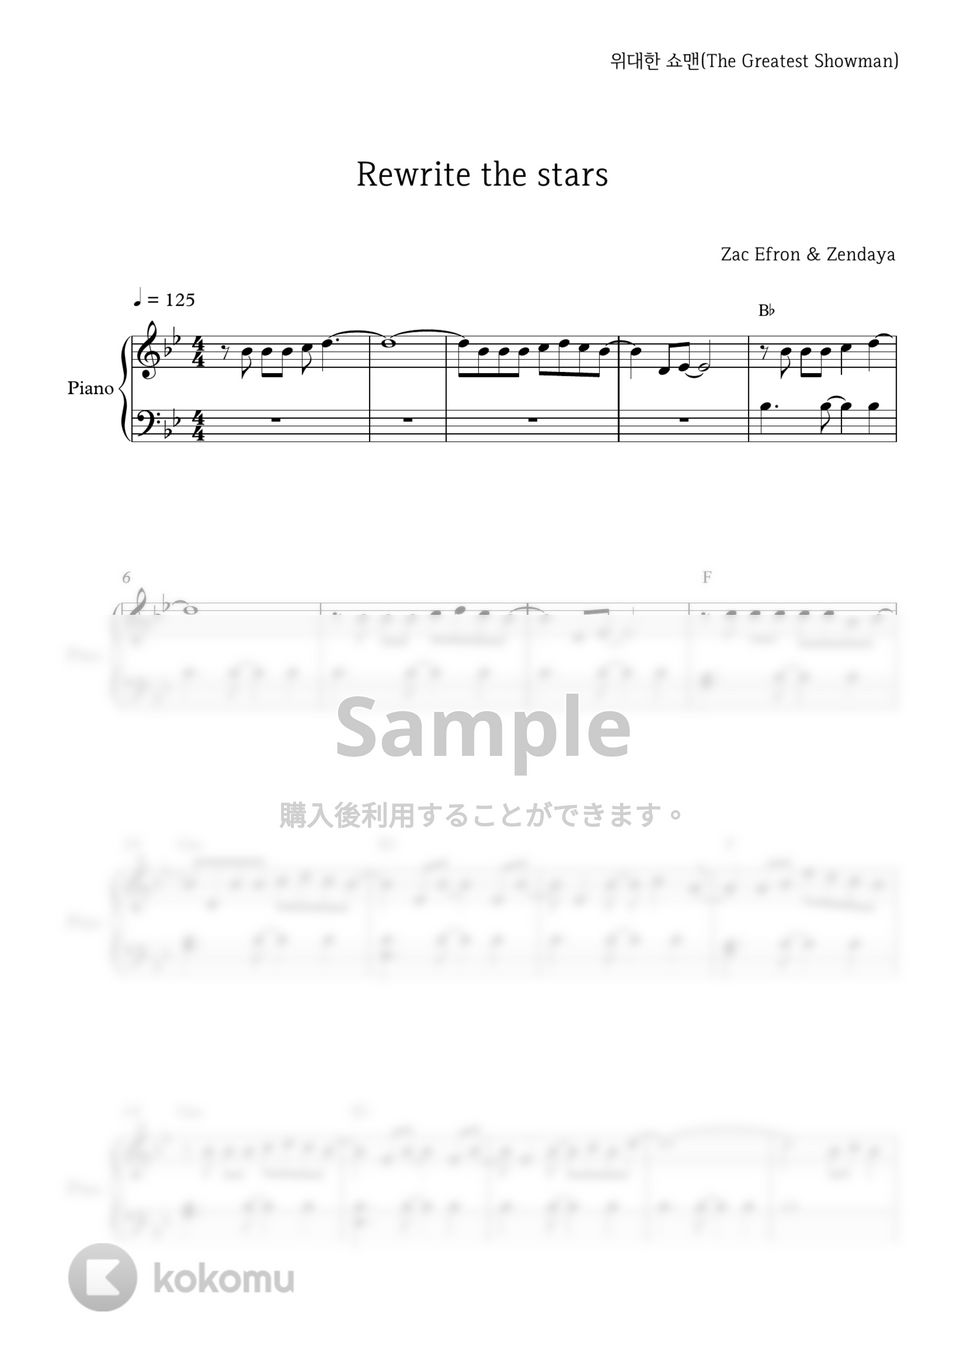 グレイテスト・ショーマン - Rewrite The Stars by PIANOiNU